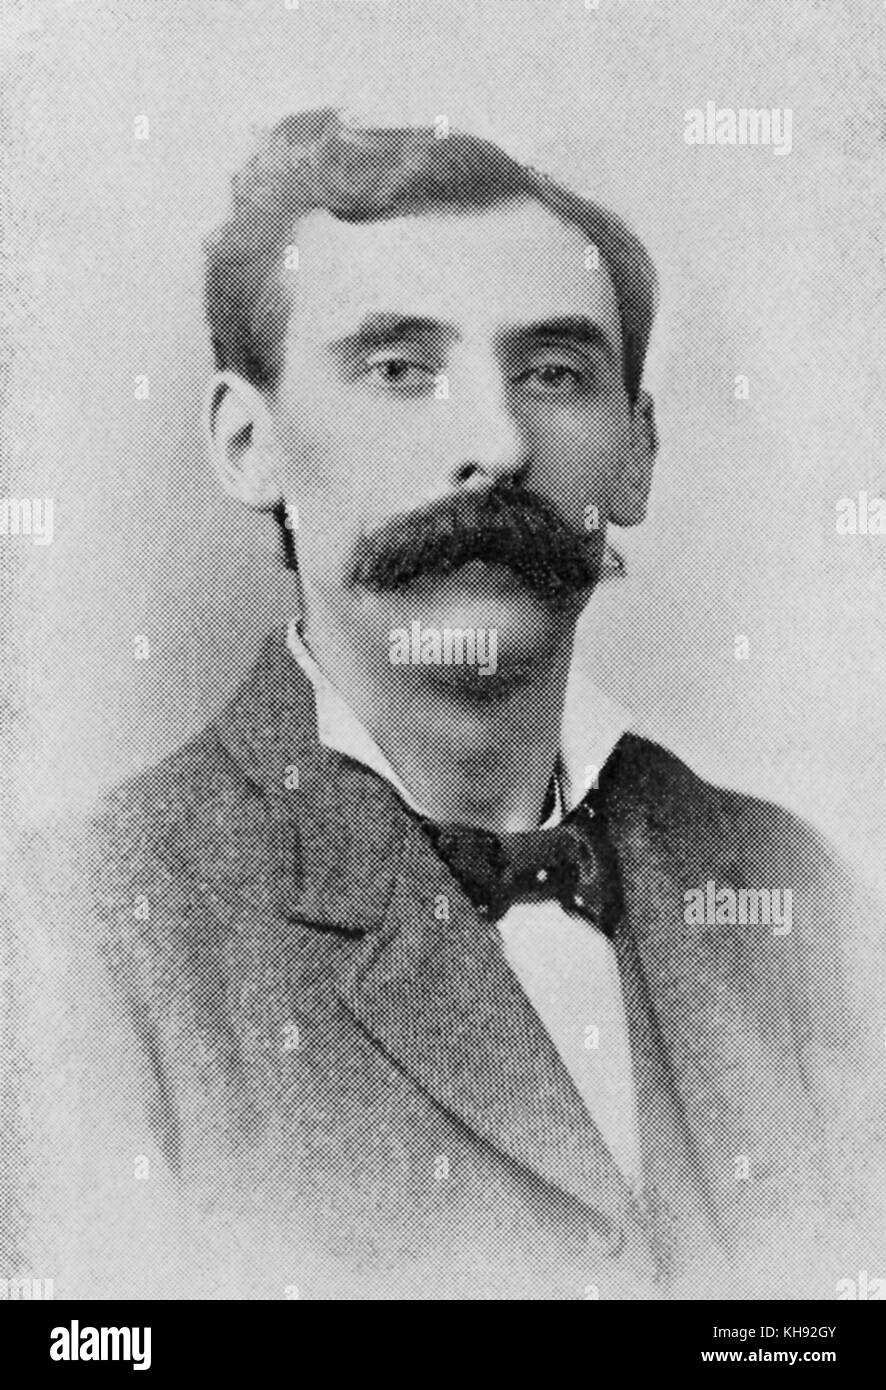 Wilfred Jones. Walisischen Lehrer für Gesang, Komponist und Dirigent, geb. 1862. Stockfoto